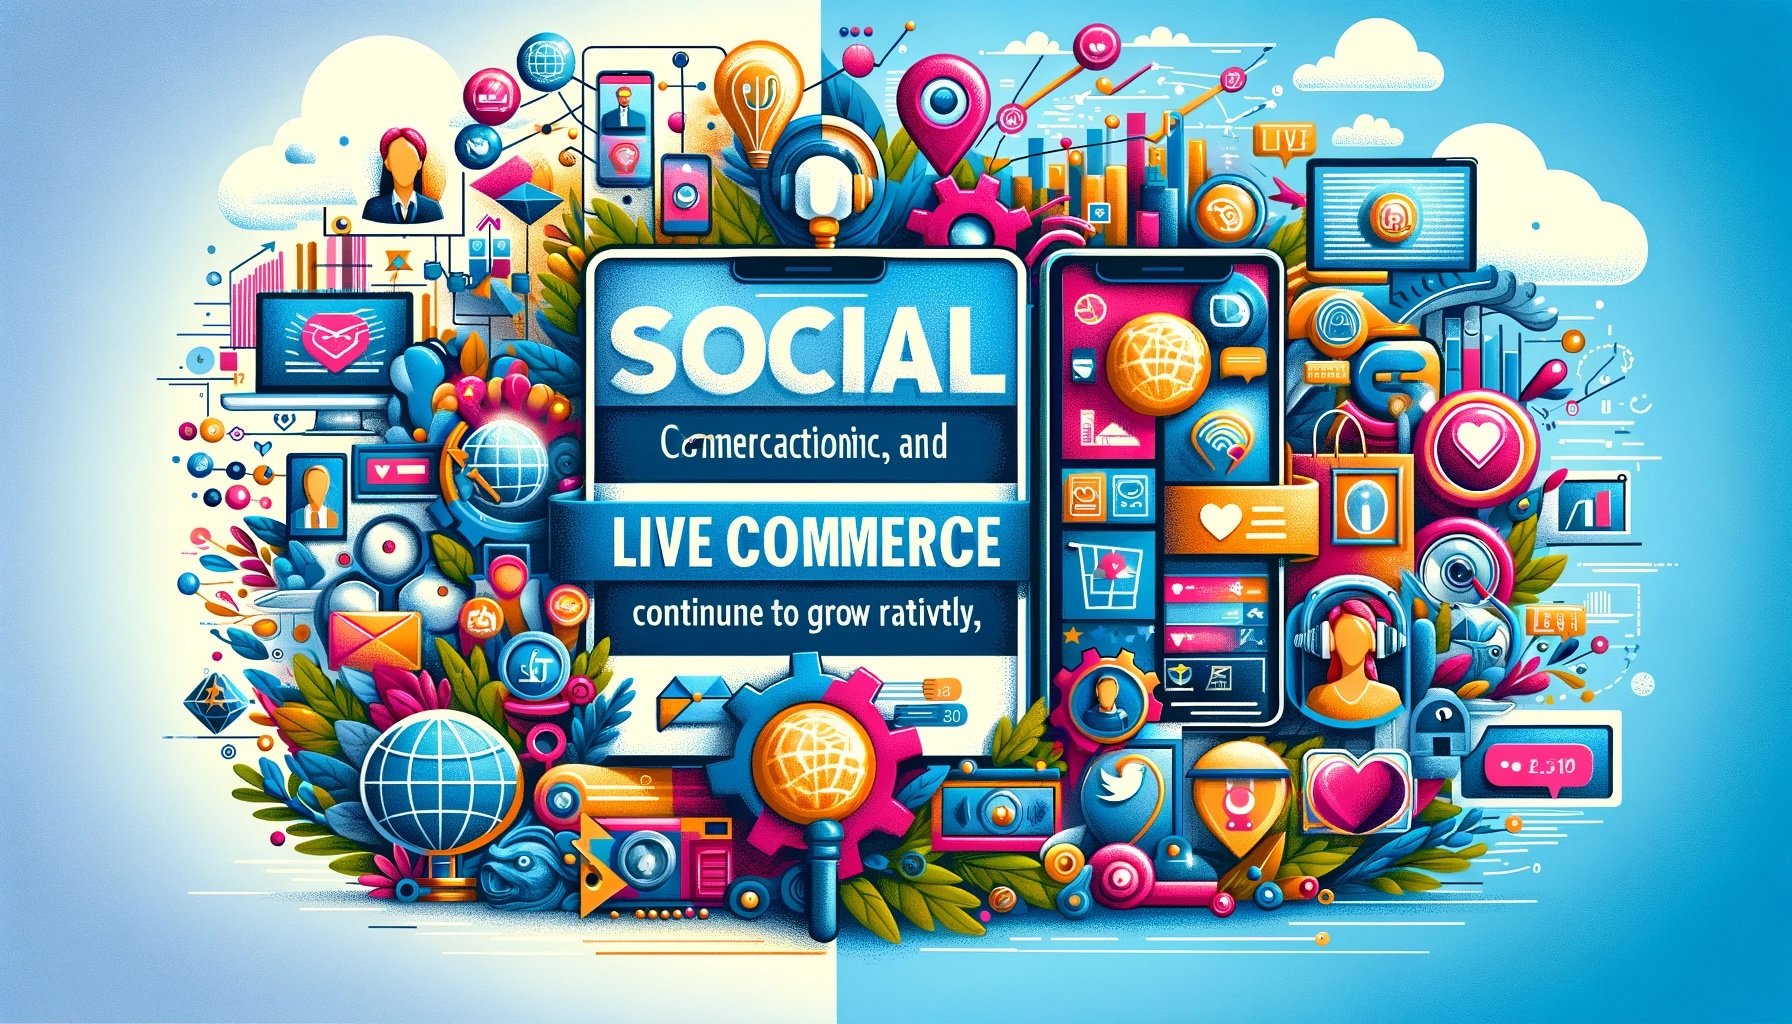 1. Il Social Commerce e il Live Commerce continueranno a svilupparsi a passi da gigante